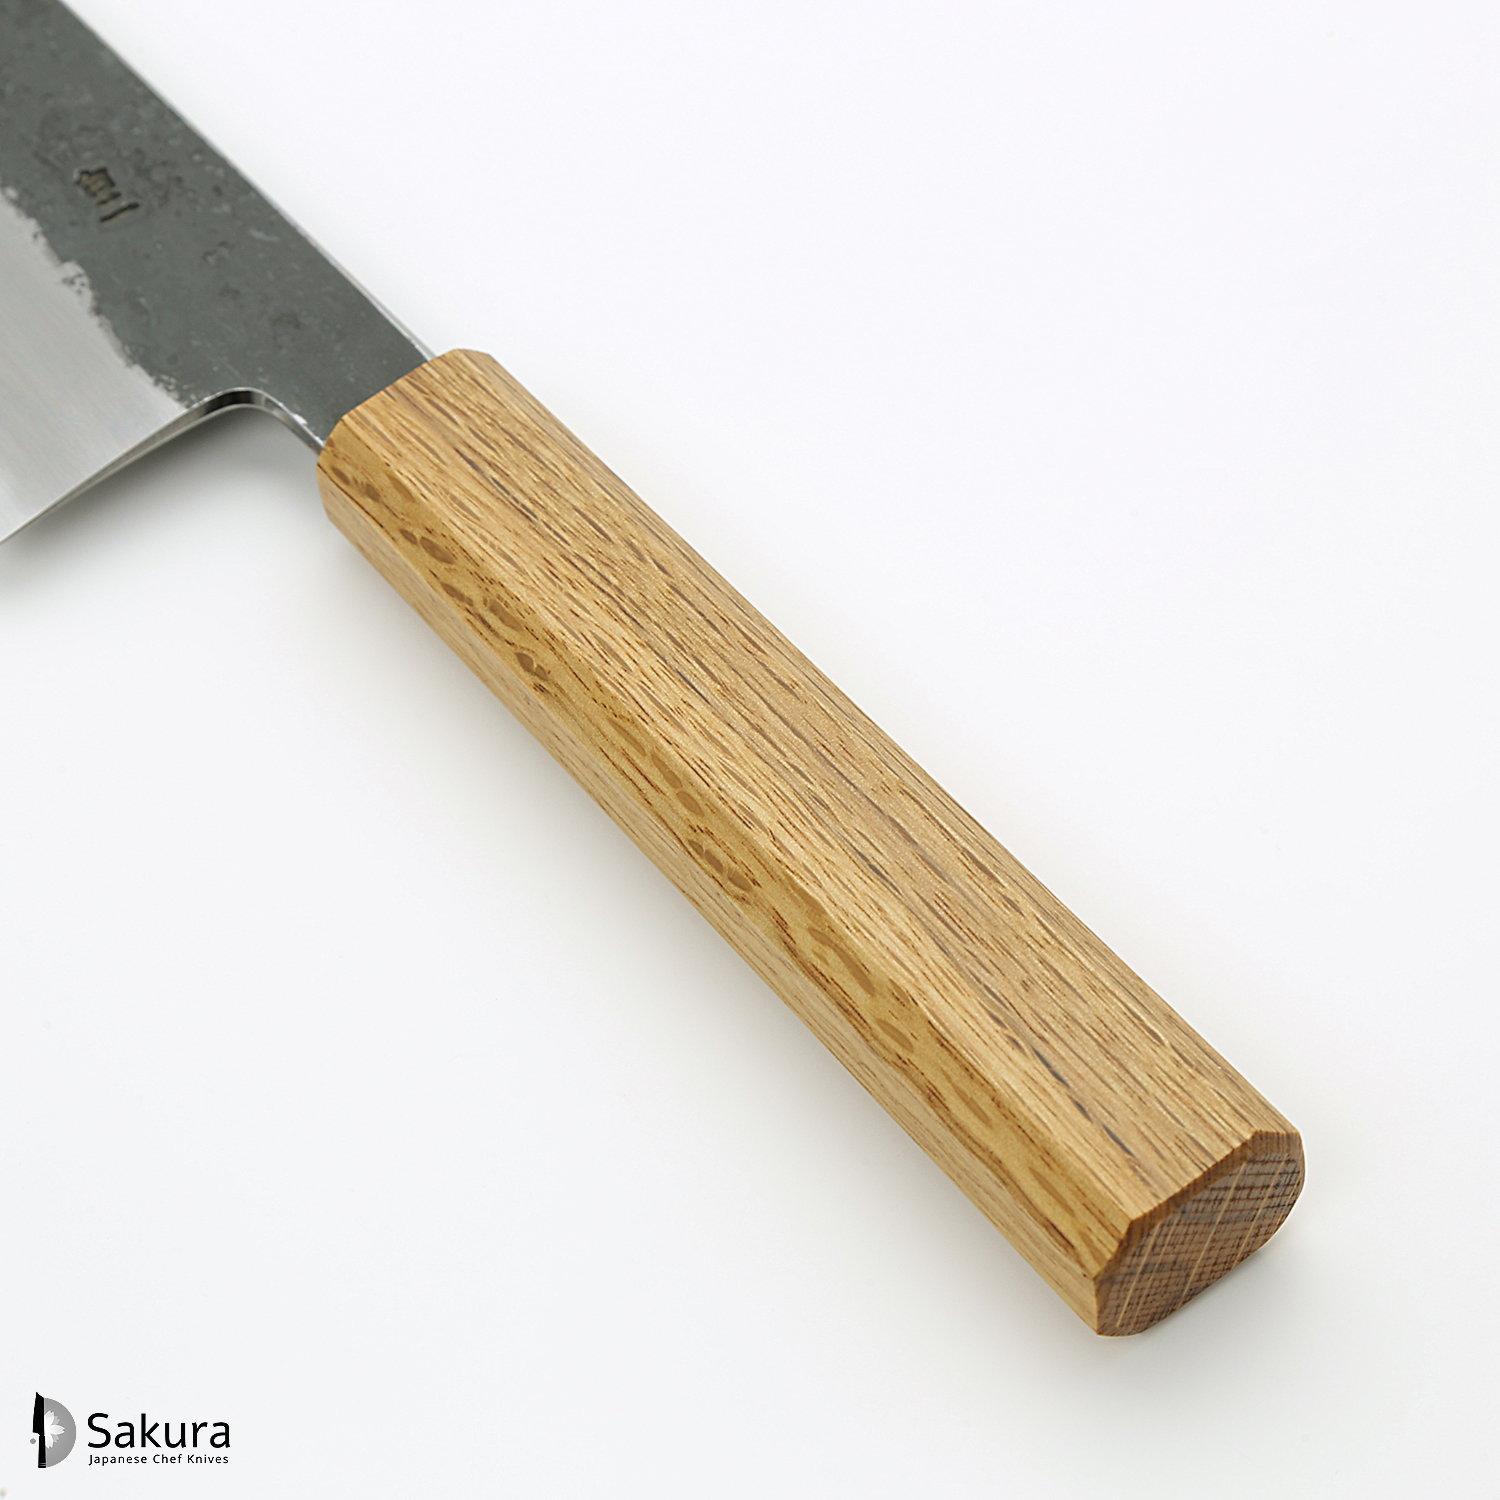 סכין רב-תכליתית בּוּנְקָה 170מ״מ מחושלת בעבודת יד 3 שכבות: פלדת פחמן יפנית מתקדמת מסוג Shirogami #2 עטופה ברזל בגימור קורואיצ׳י שחור גימור קורואיצ׳י שחור האדו יפן